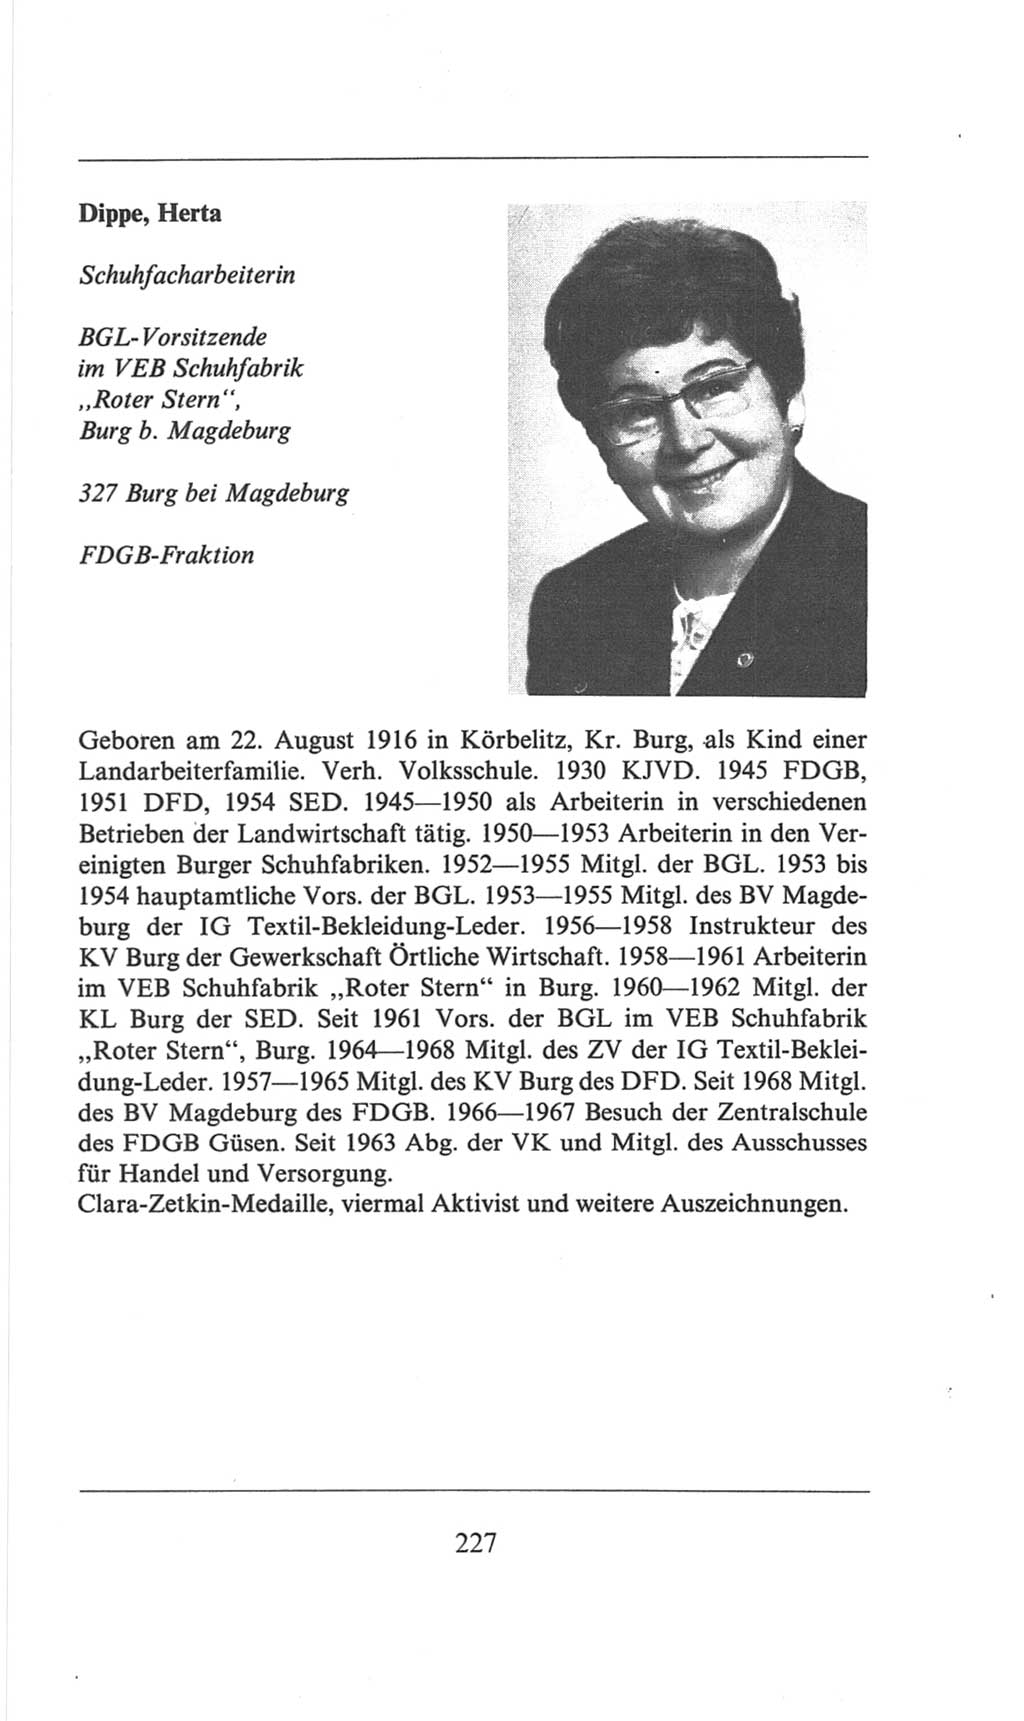 Volkskammer (VK) der Deutschen Demokratischen Republik (DDR), 6. Wahlperiode 1971-1976, Seite 227 (VK. DDR 6. WP. 1971-1976, S. 227)